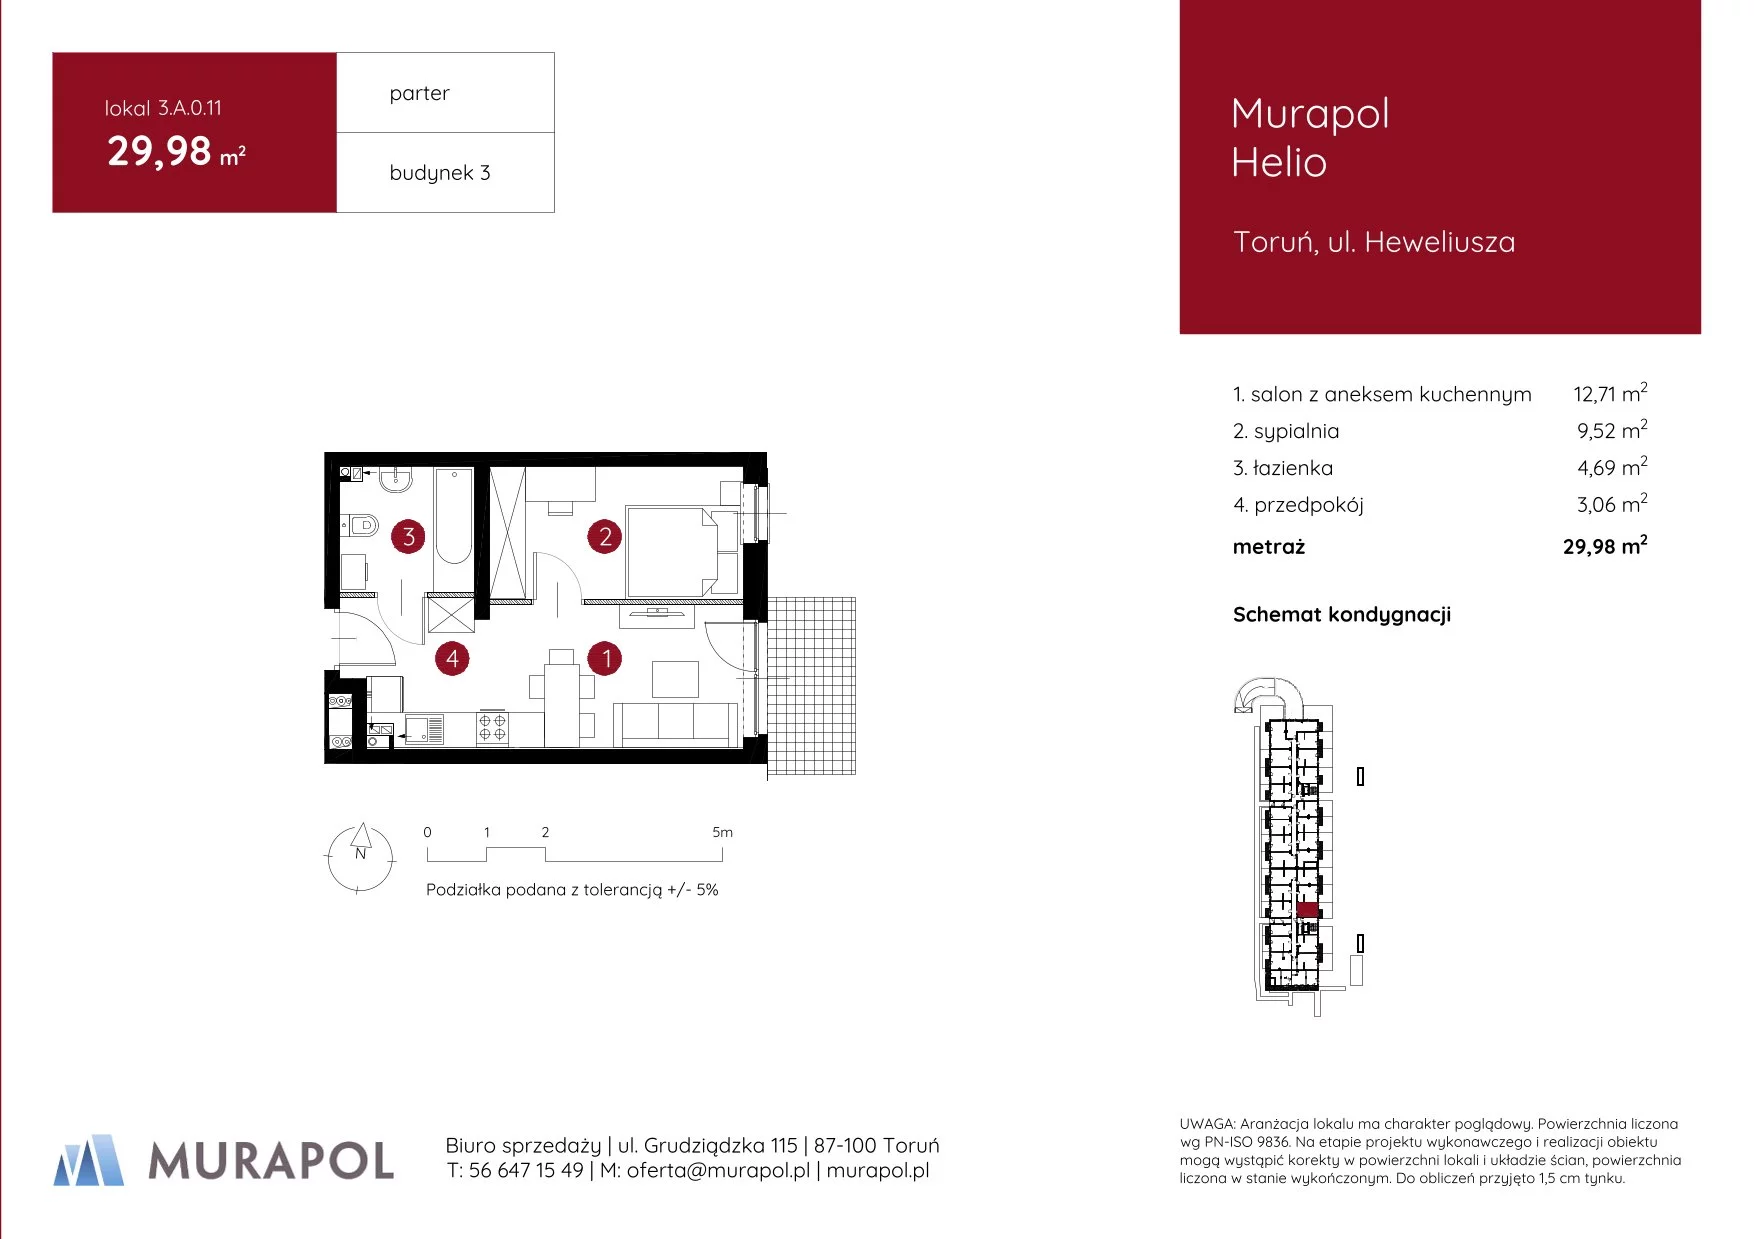 Mieszkanie 29,98 m², parter, oferta nr 3.A.0.11, Murapol Helio, Toruń, Wrzosy, JAR, ul. Heweliusza